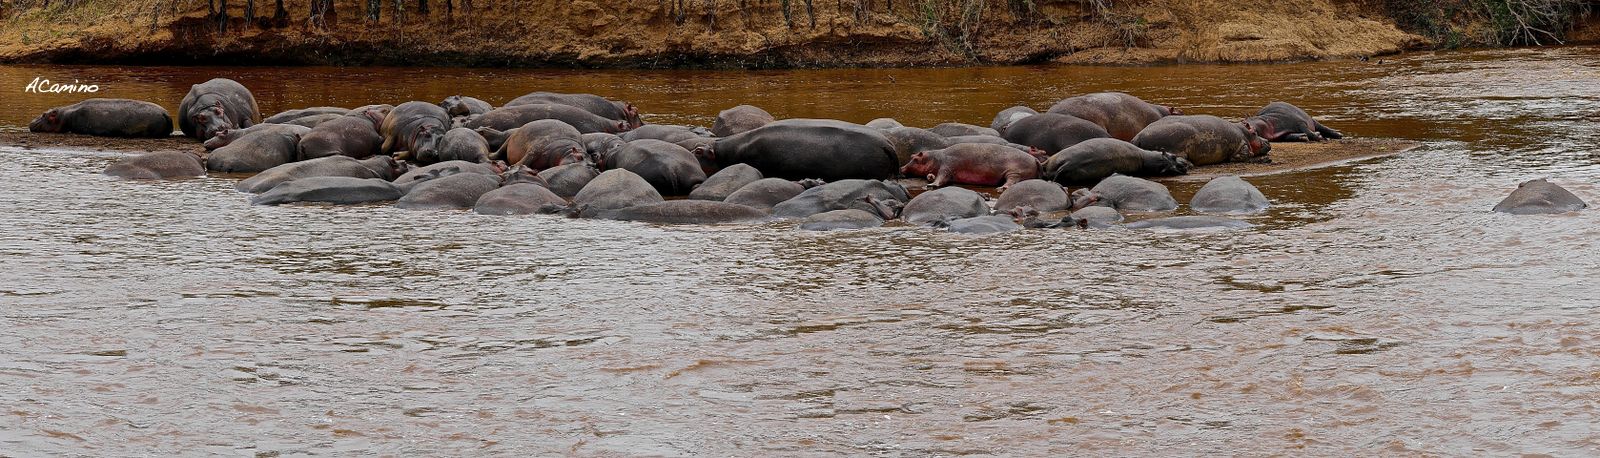 2º safari en el Mara: Hipos, Leones, Leopardos, hienas, jirafas, puesta de sol - 12 días de Safari en Kenia: Jambo bwana (21)